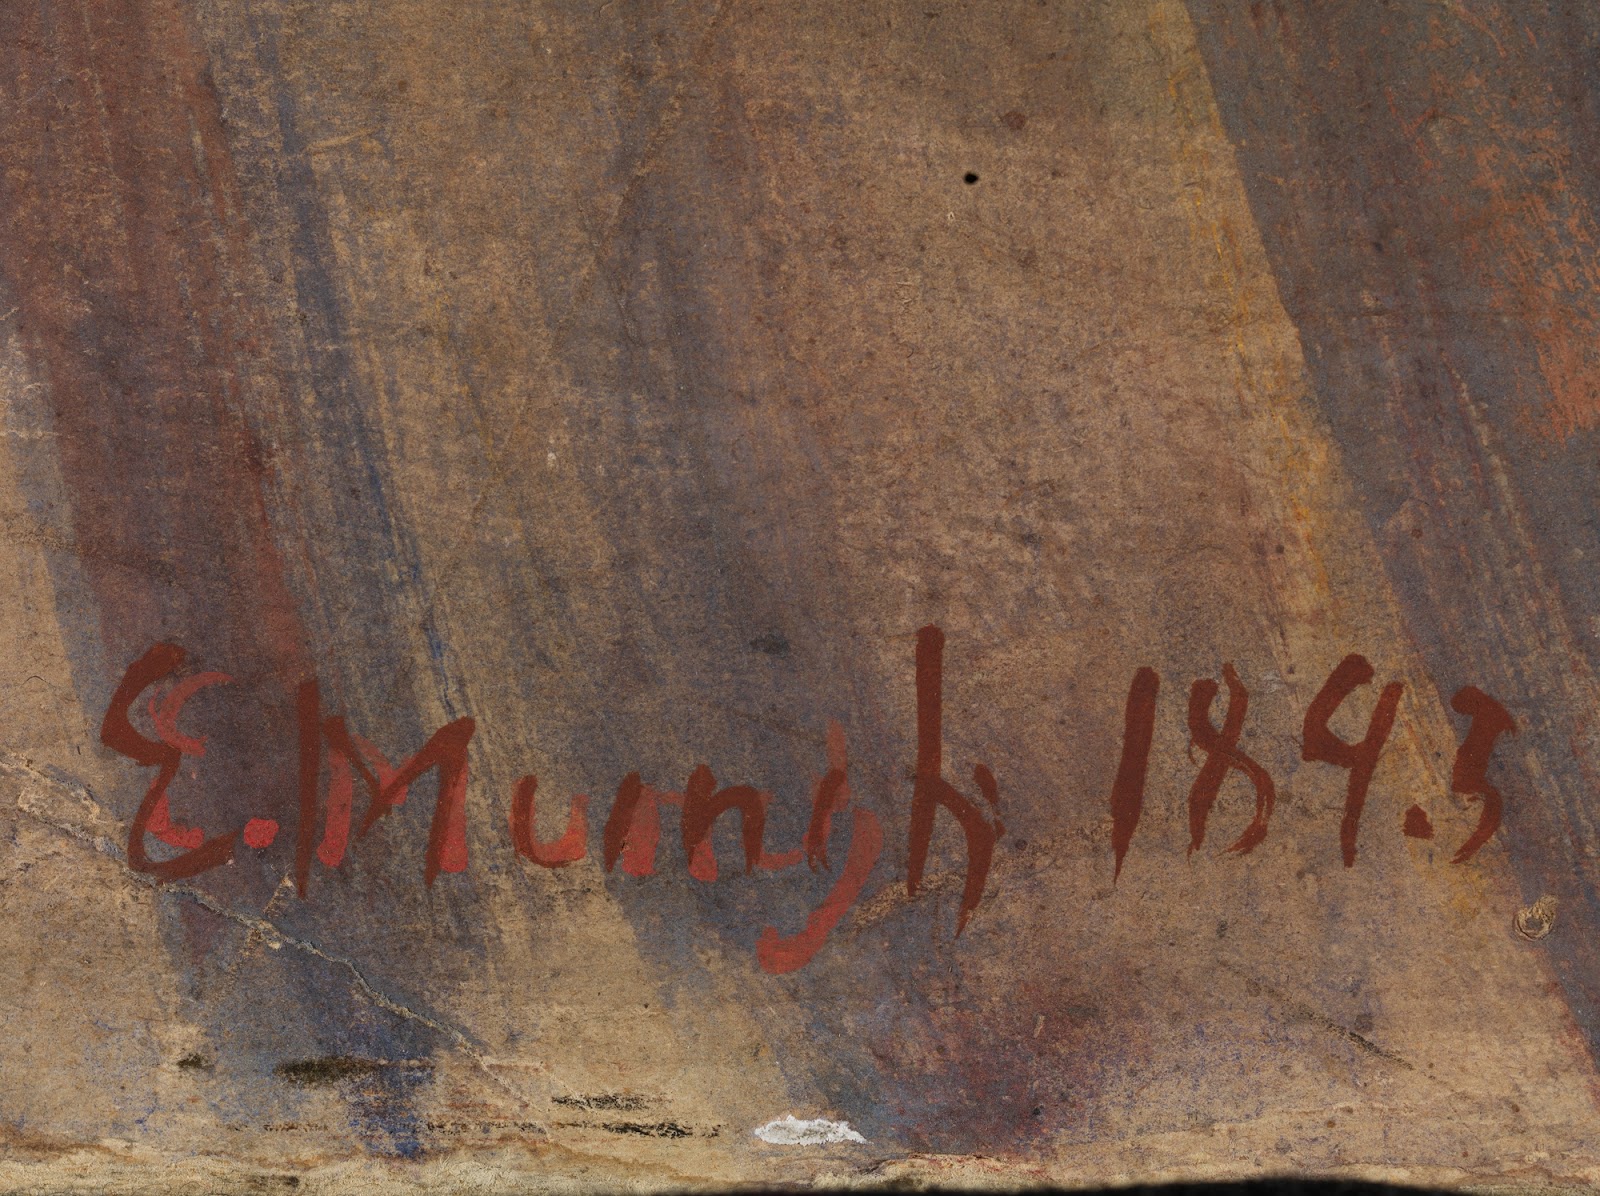 Edvard+Munch-1863-1944 (68).jpg